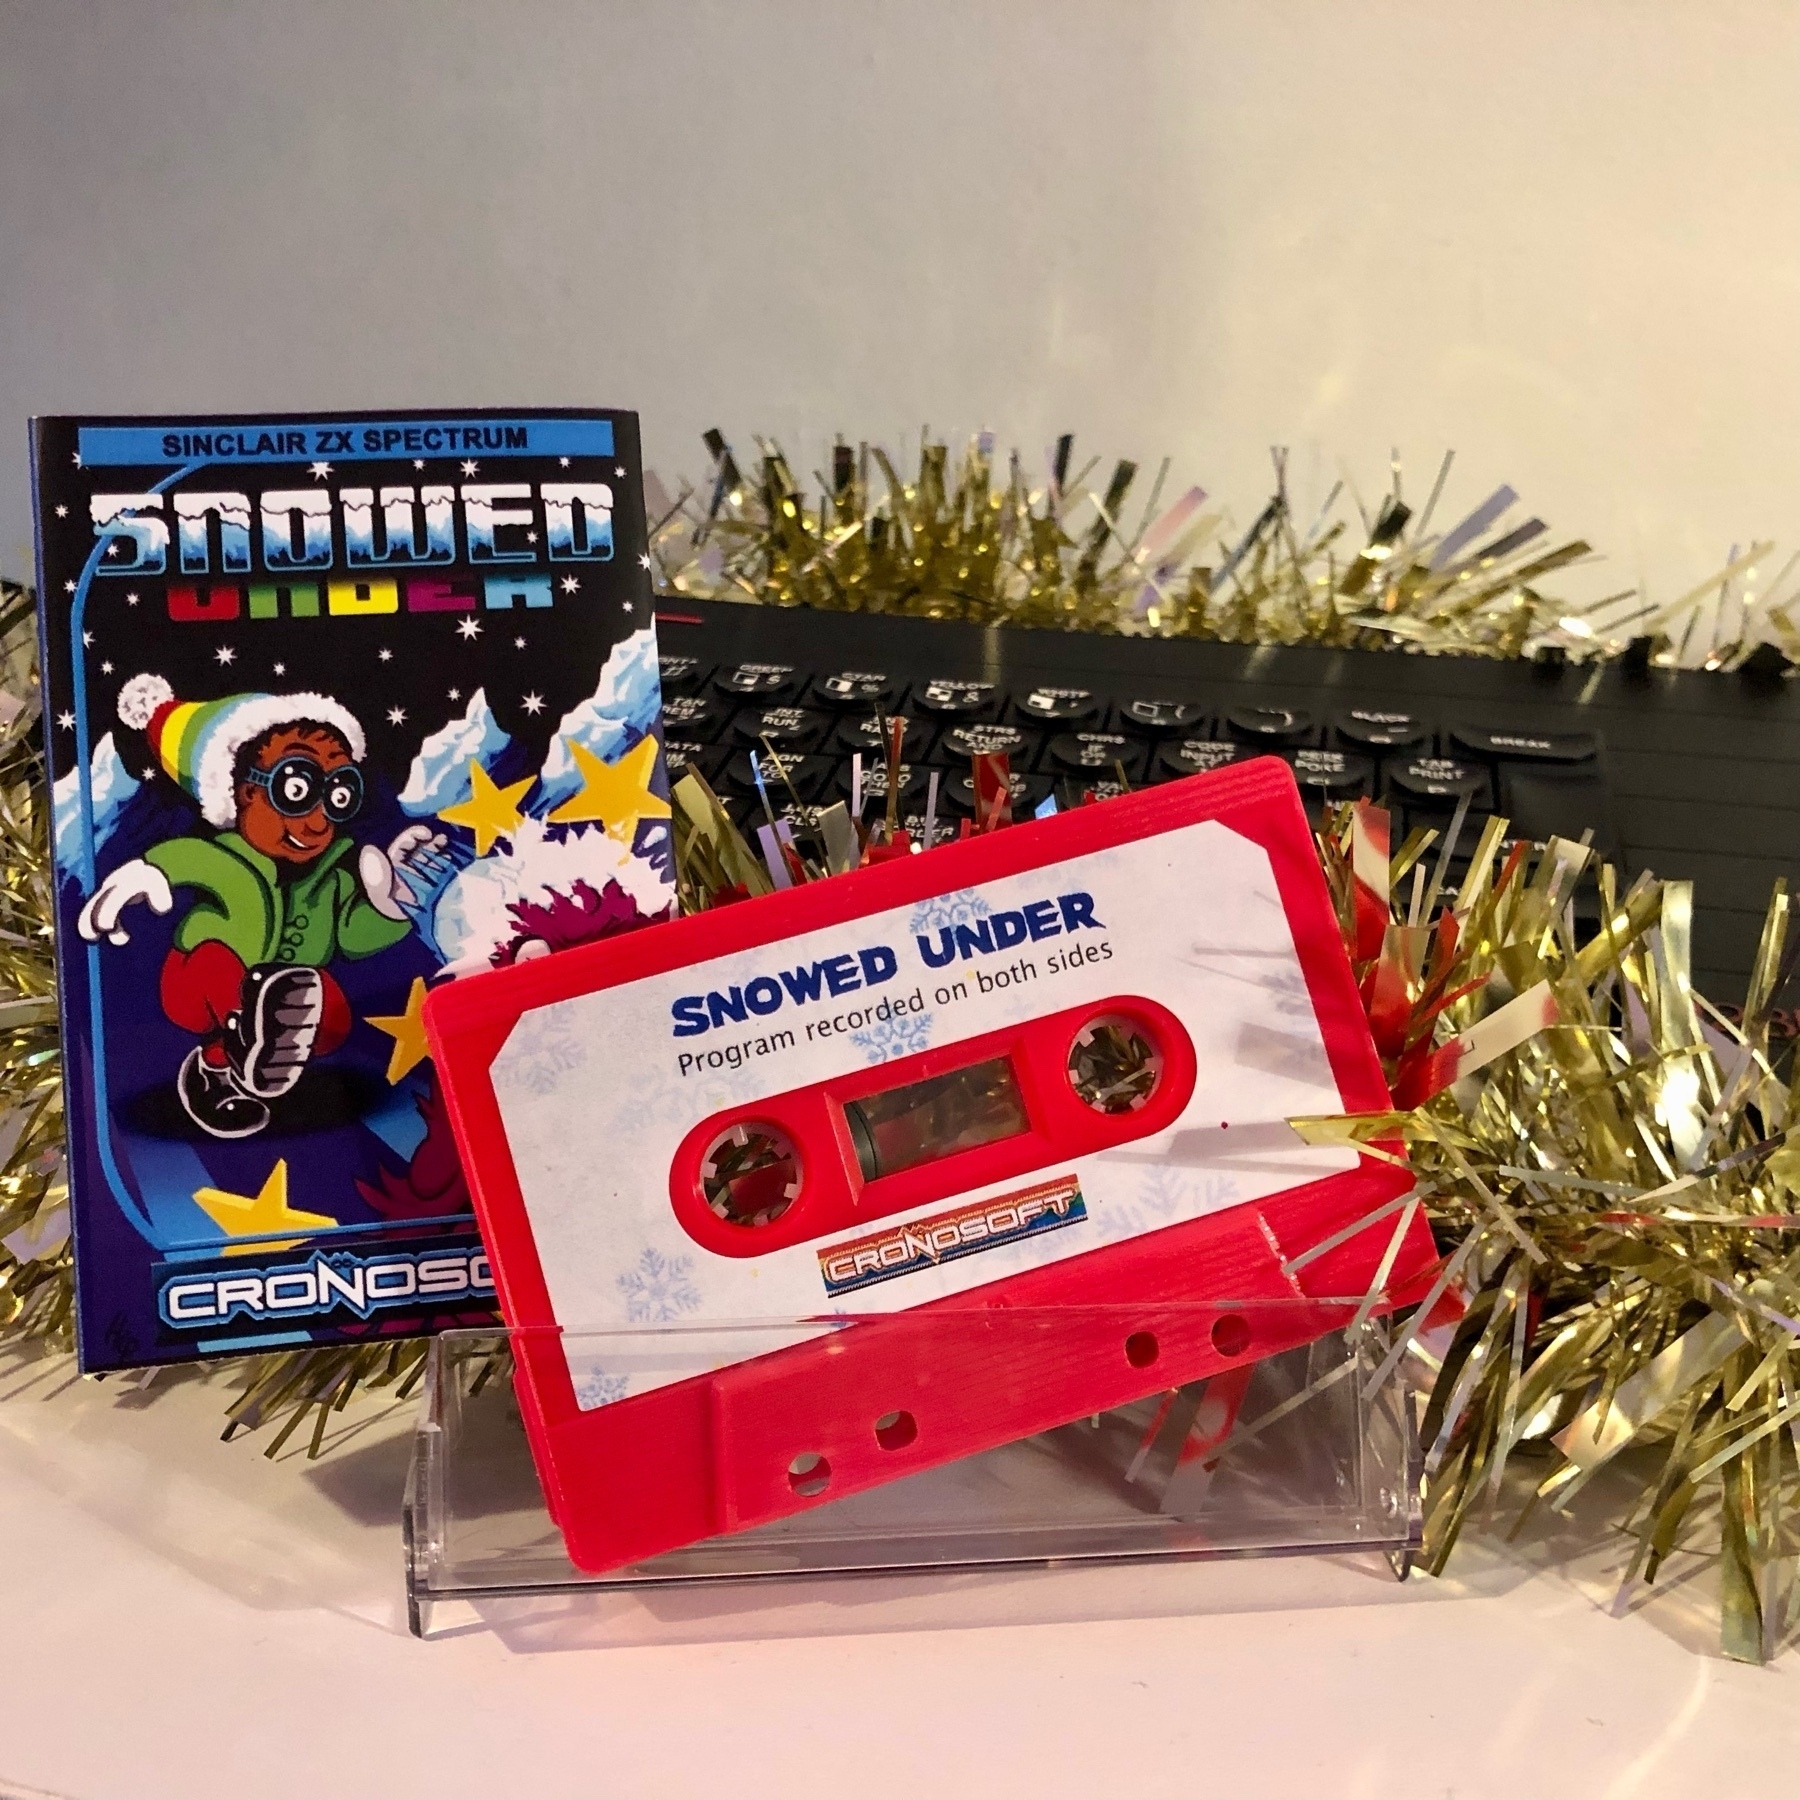 ZX Spectrum game "Snowed Under" on cassette